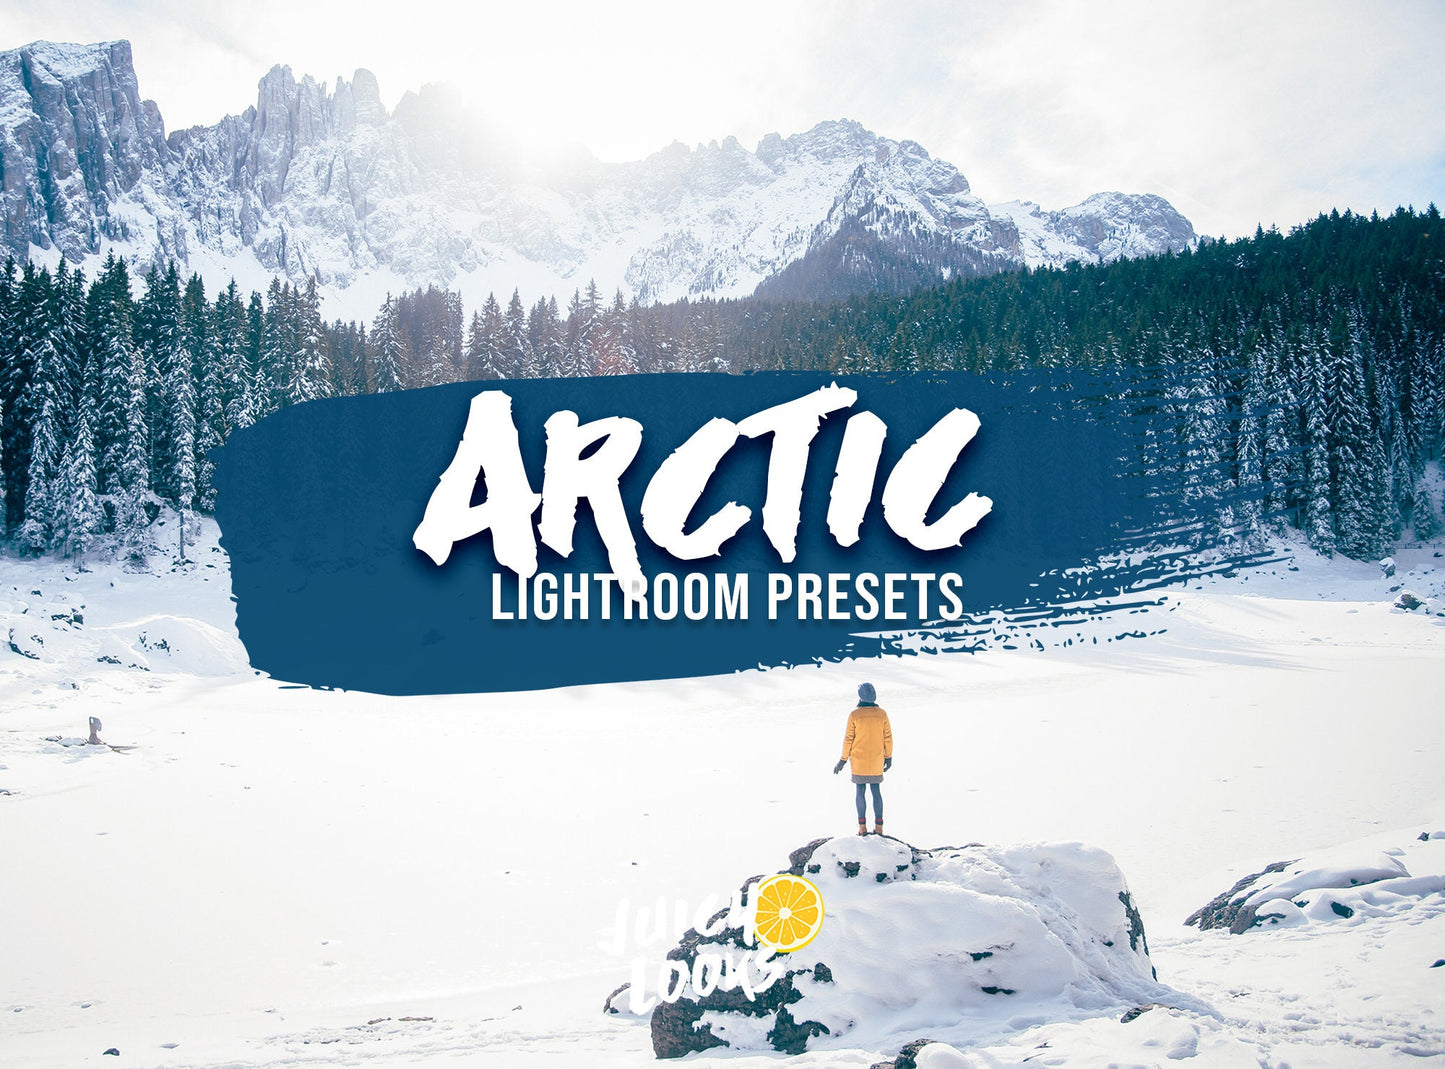 Arctic Lightroom for Mobile & Desktop - Juicy Looks Presets